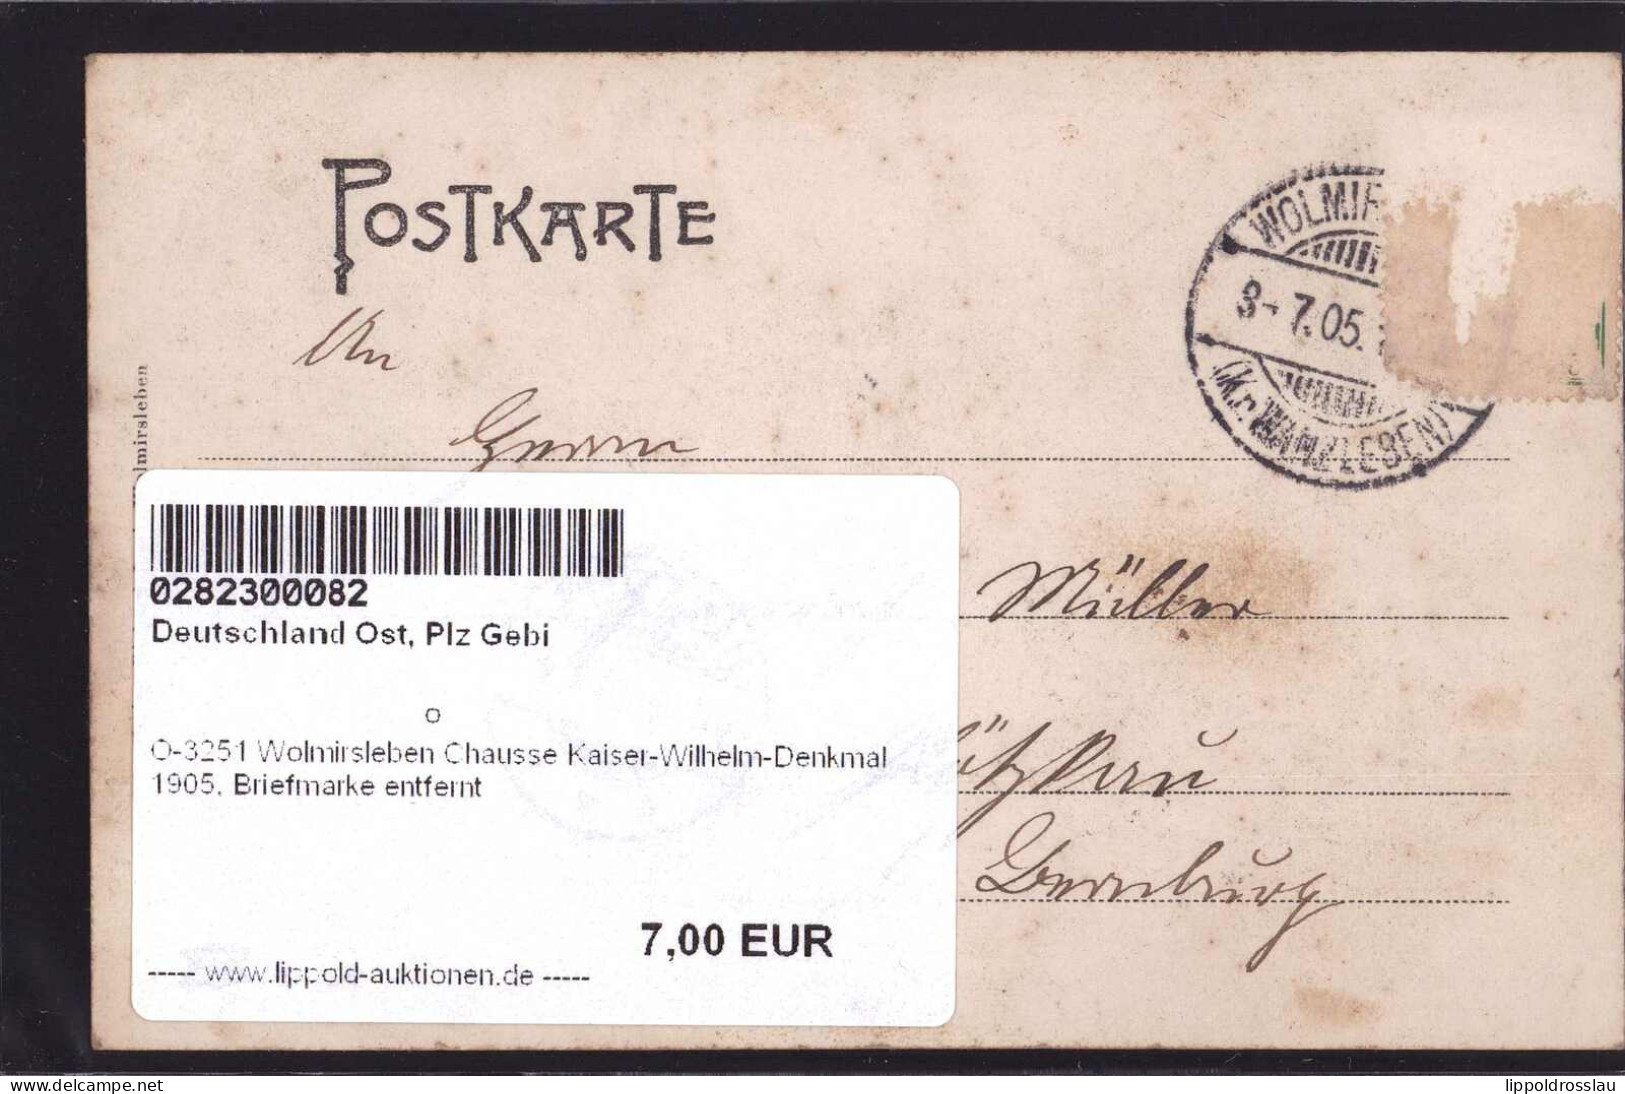 Gest. O-3251 Wolmirsleben Chausse Kaiser-Wilhelm-Denkmal 1905, Briefmarke Entfernt - Stassfurt